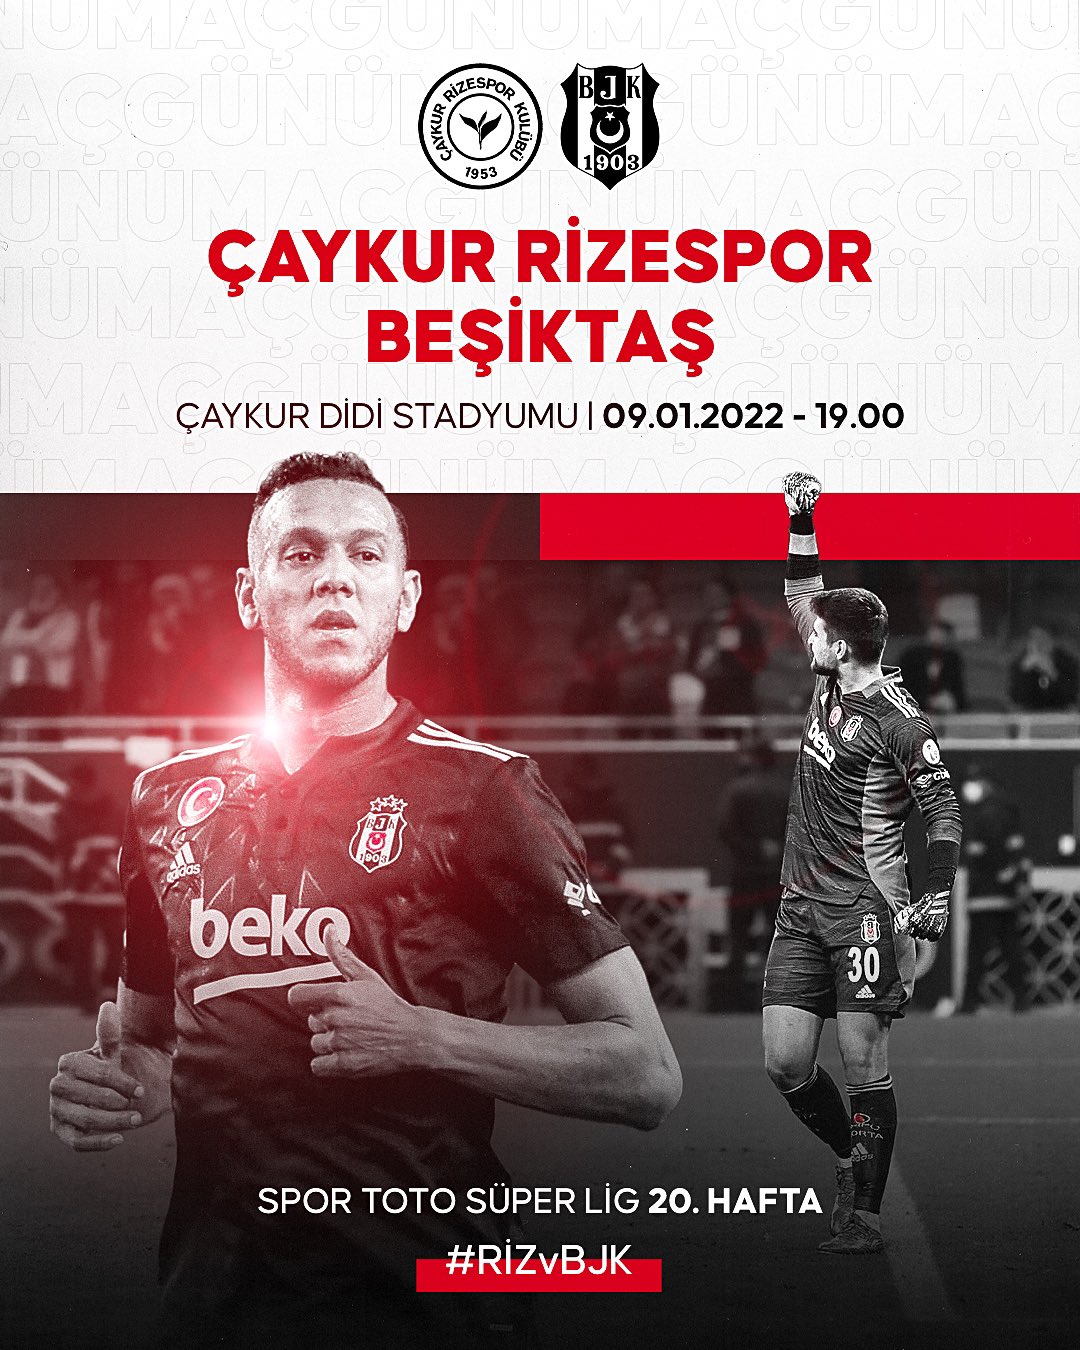 Beşiktaş'ın Rizespor Maçına Özel Hazırladığı Görsel